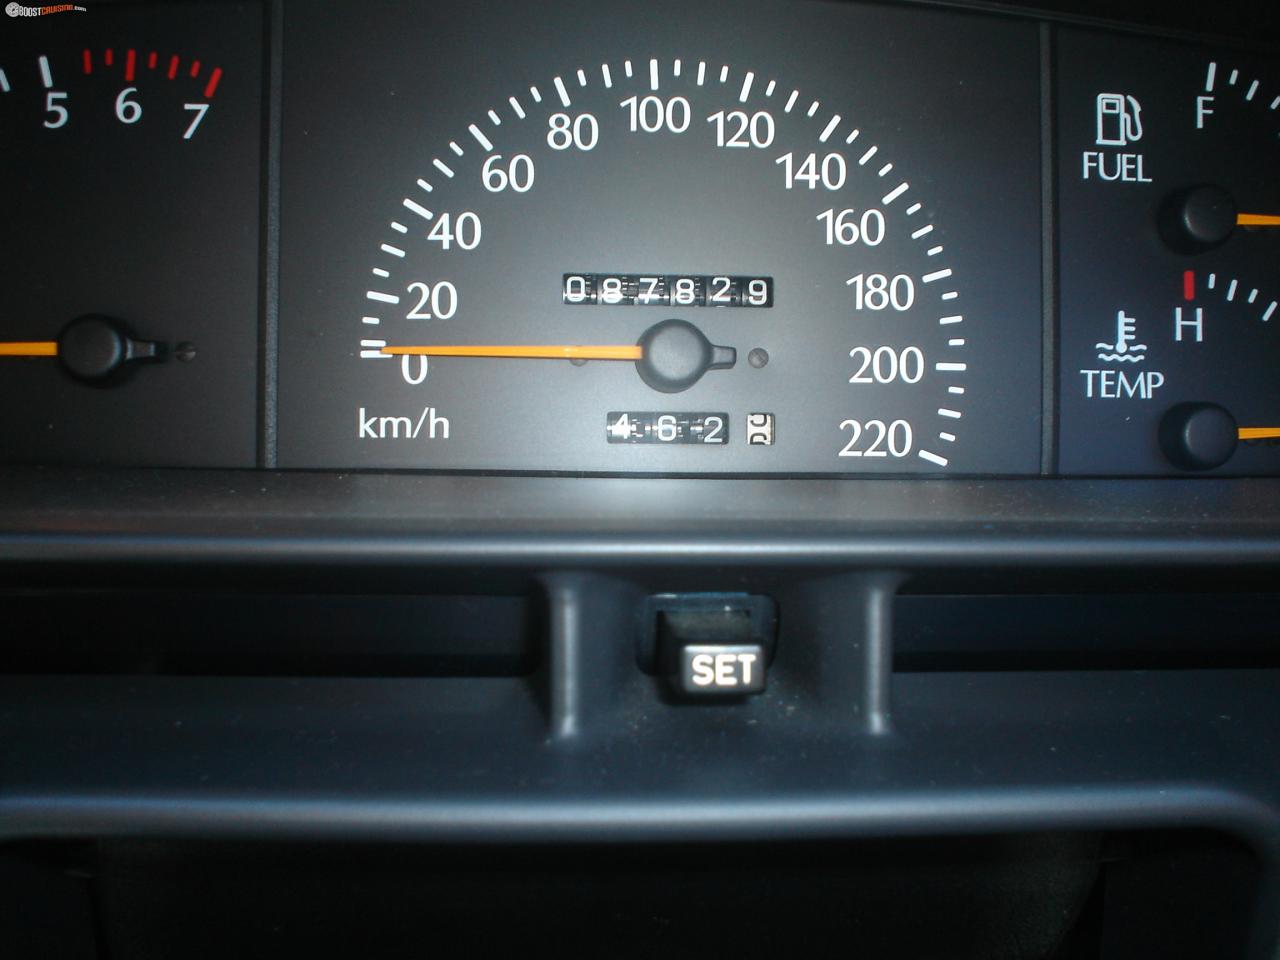 1996 Holden Commodore Vs Equipe